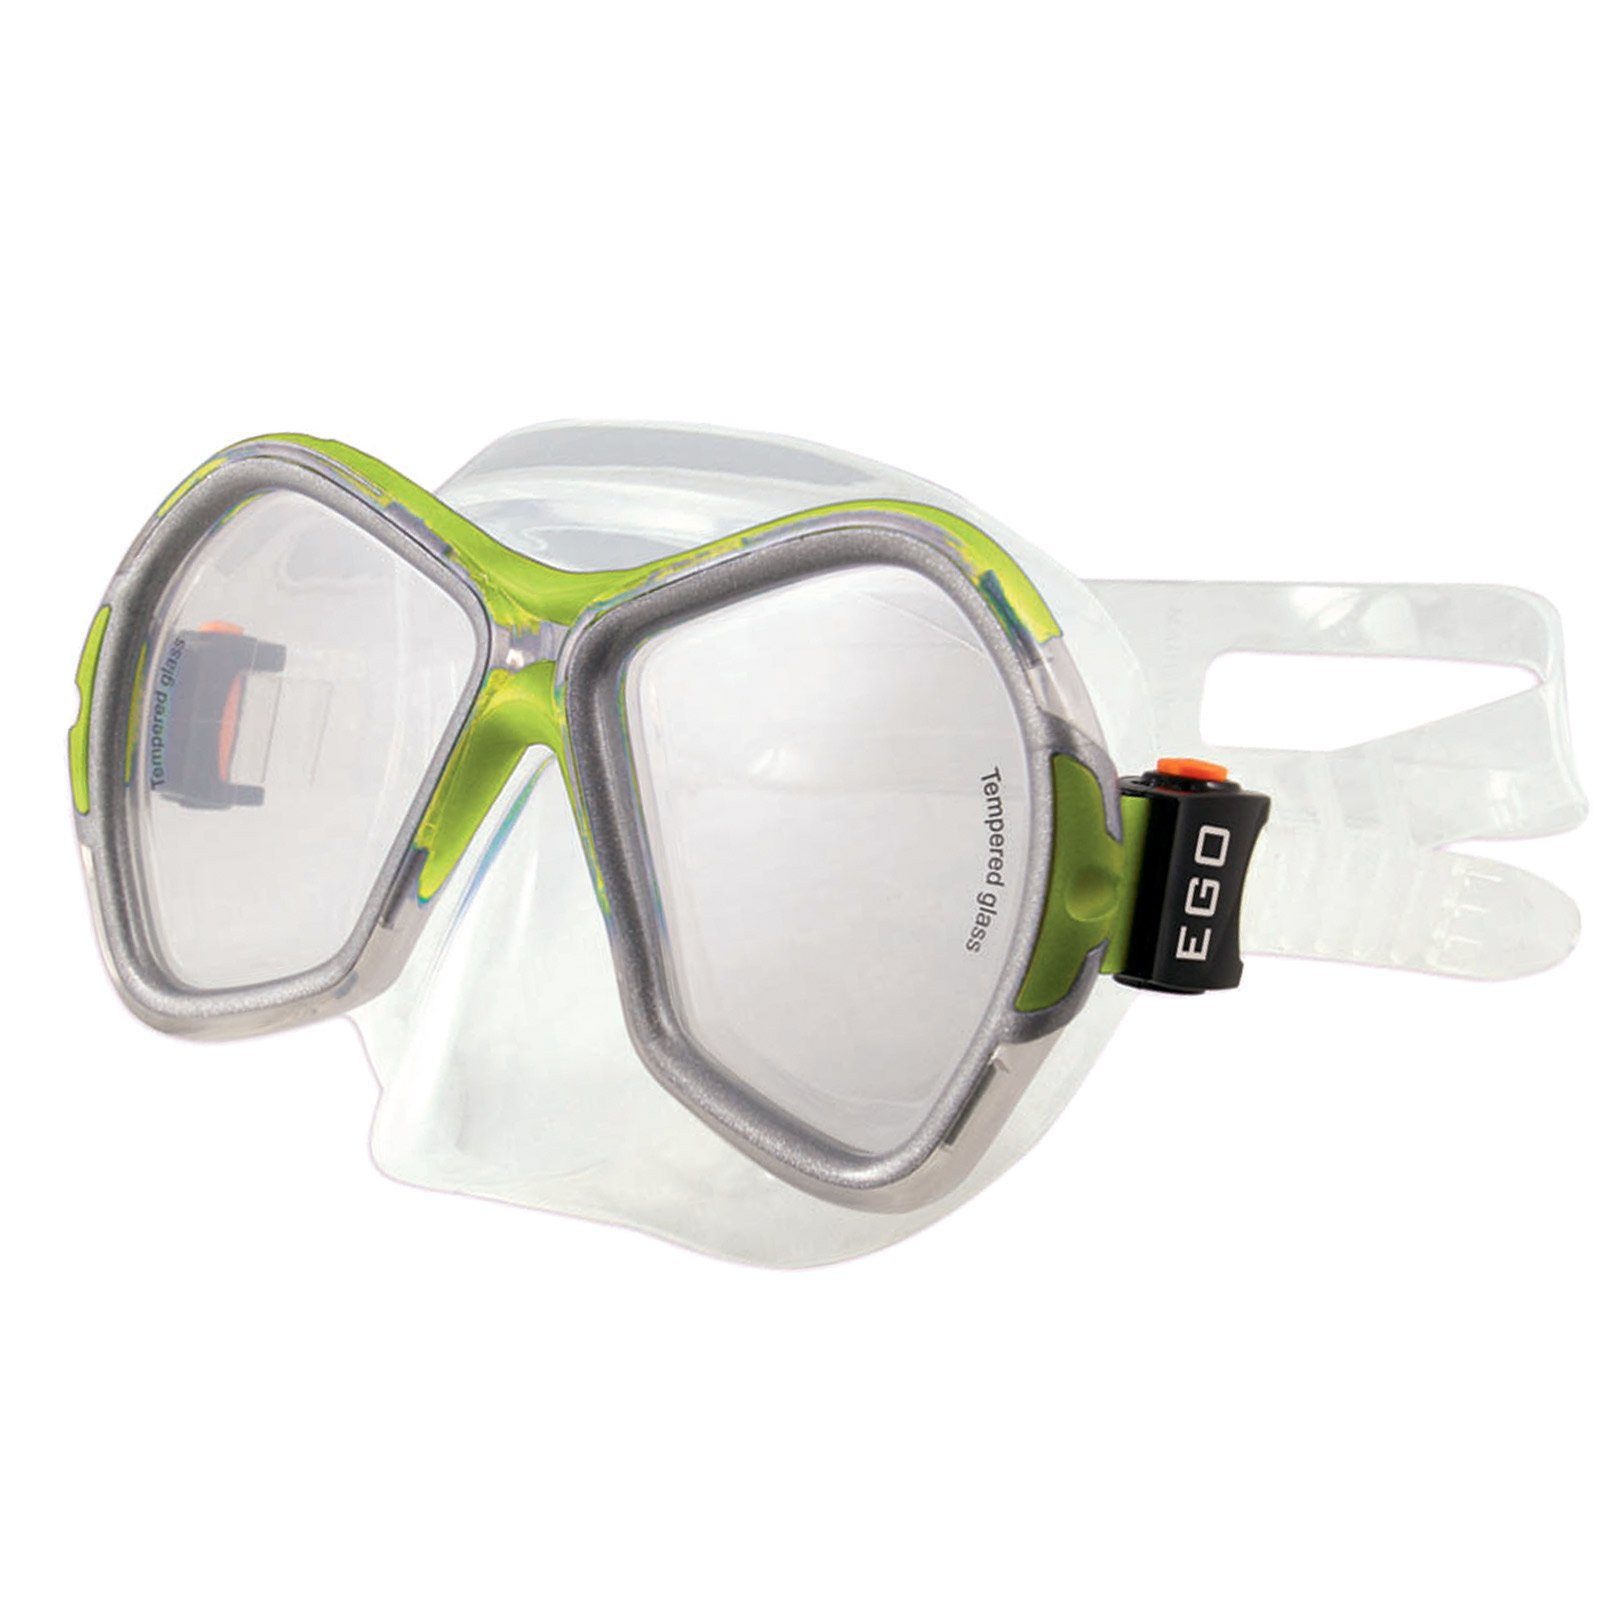 Schwimm Brille Salvas Gelb/transparent Tauch Schnorchel, Erwachsene Silikon Schwimmbrille Phoenix Maske Beschlag